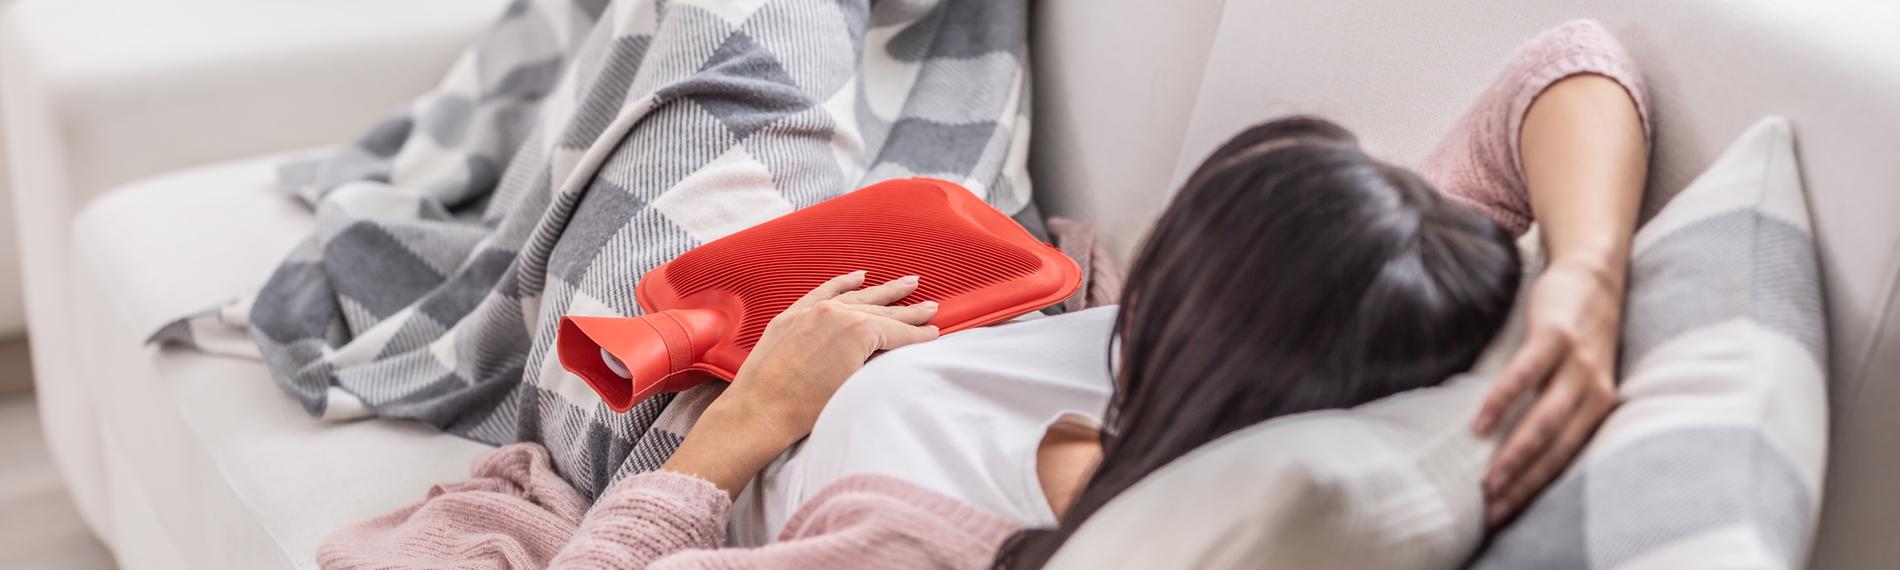 Eine Frau liegt mit Menstruationsbeschwerden auf dem Sofa. Sie hält eine rote Wärmflasche auf ihren Bauch und ist mit einer karierten Decke zugedeckt.